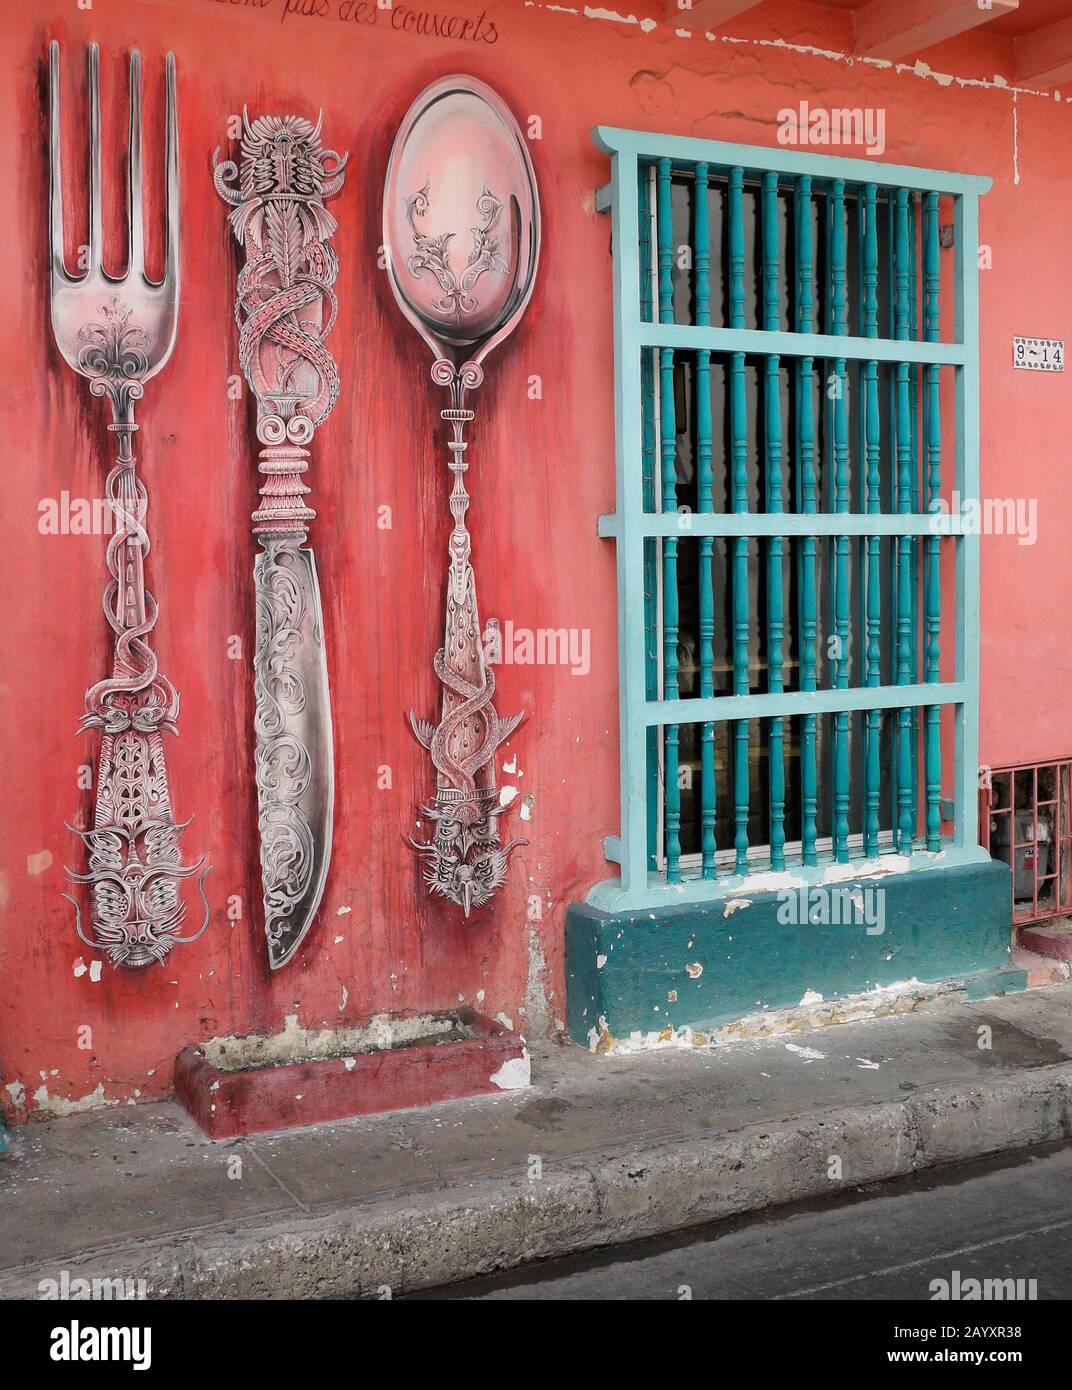 L'art de rue d'une fourche, d'un couteau et d'une cuillère décorent l'extérieur d'un bâtiment colonial coloré dans le quartier de San Diego de Carthagène, Colombie Banque D'Images